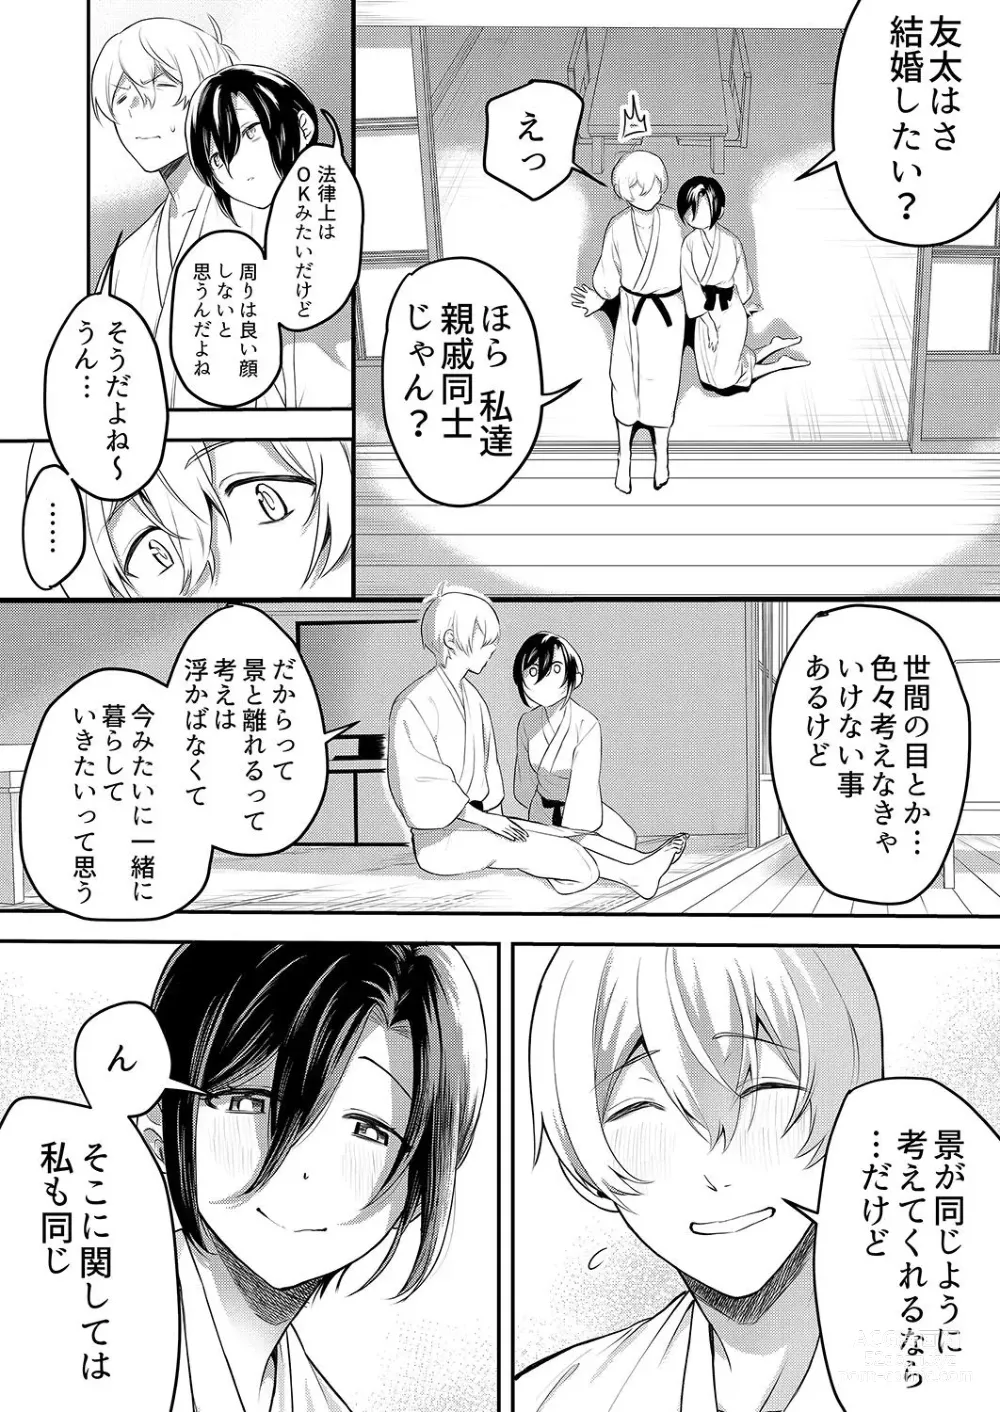 Page 145 of manga Hageshii SEX de Motokare o Wasuresasete ~ Yotta Furi shite Izanau Ane